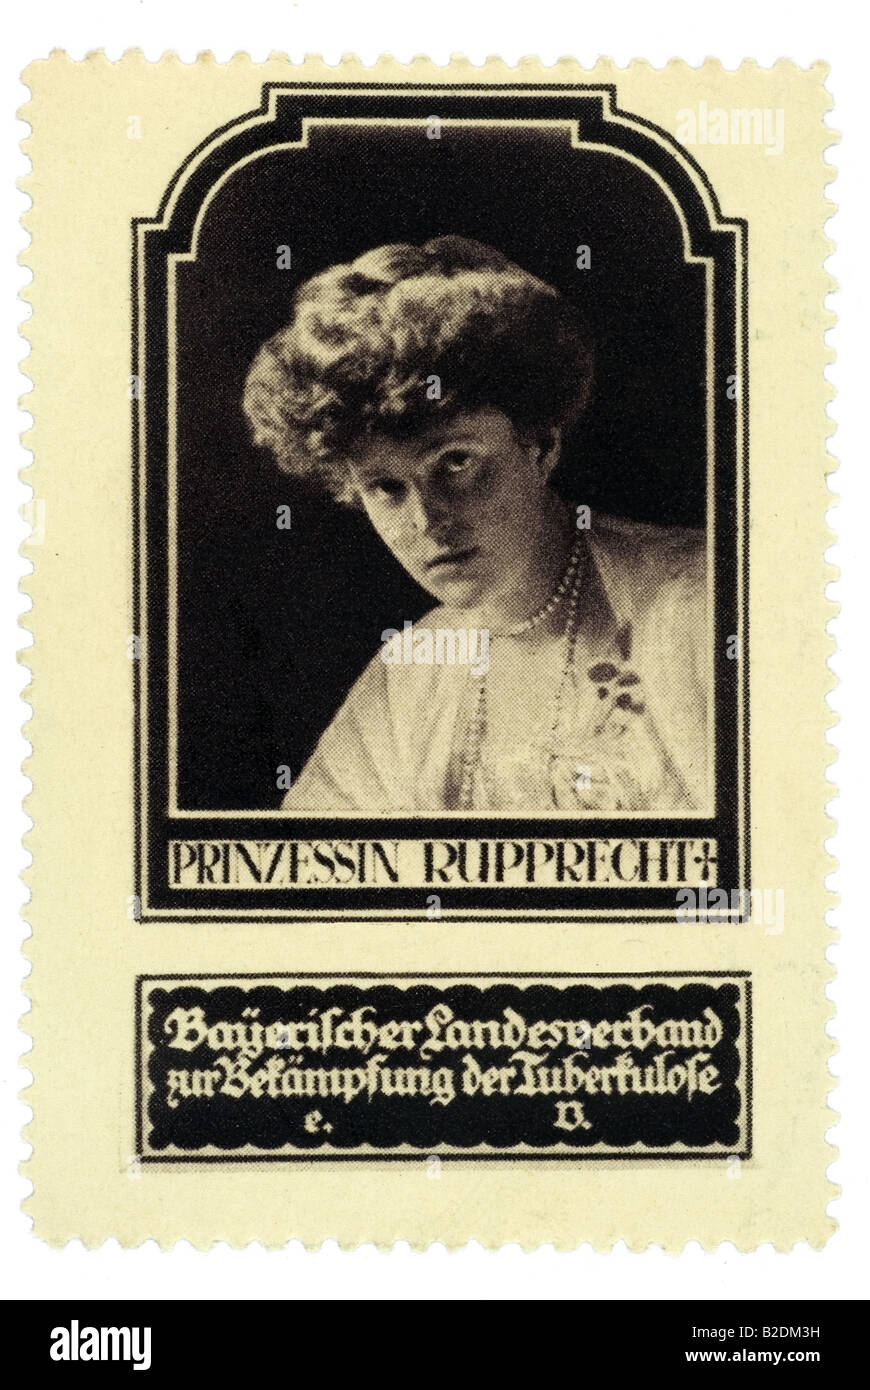 trading stamp Prinzessin Rupprecht Bayerischer Landesverbandt zur Bekämpfung der Tuberkulose Stock Photo